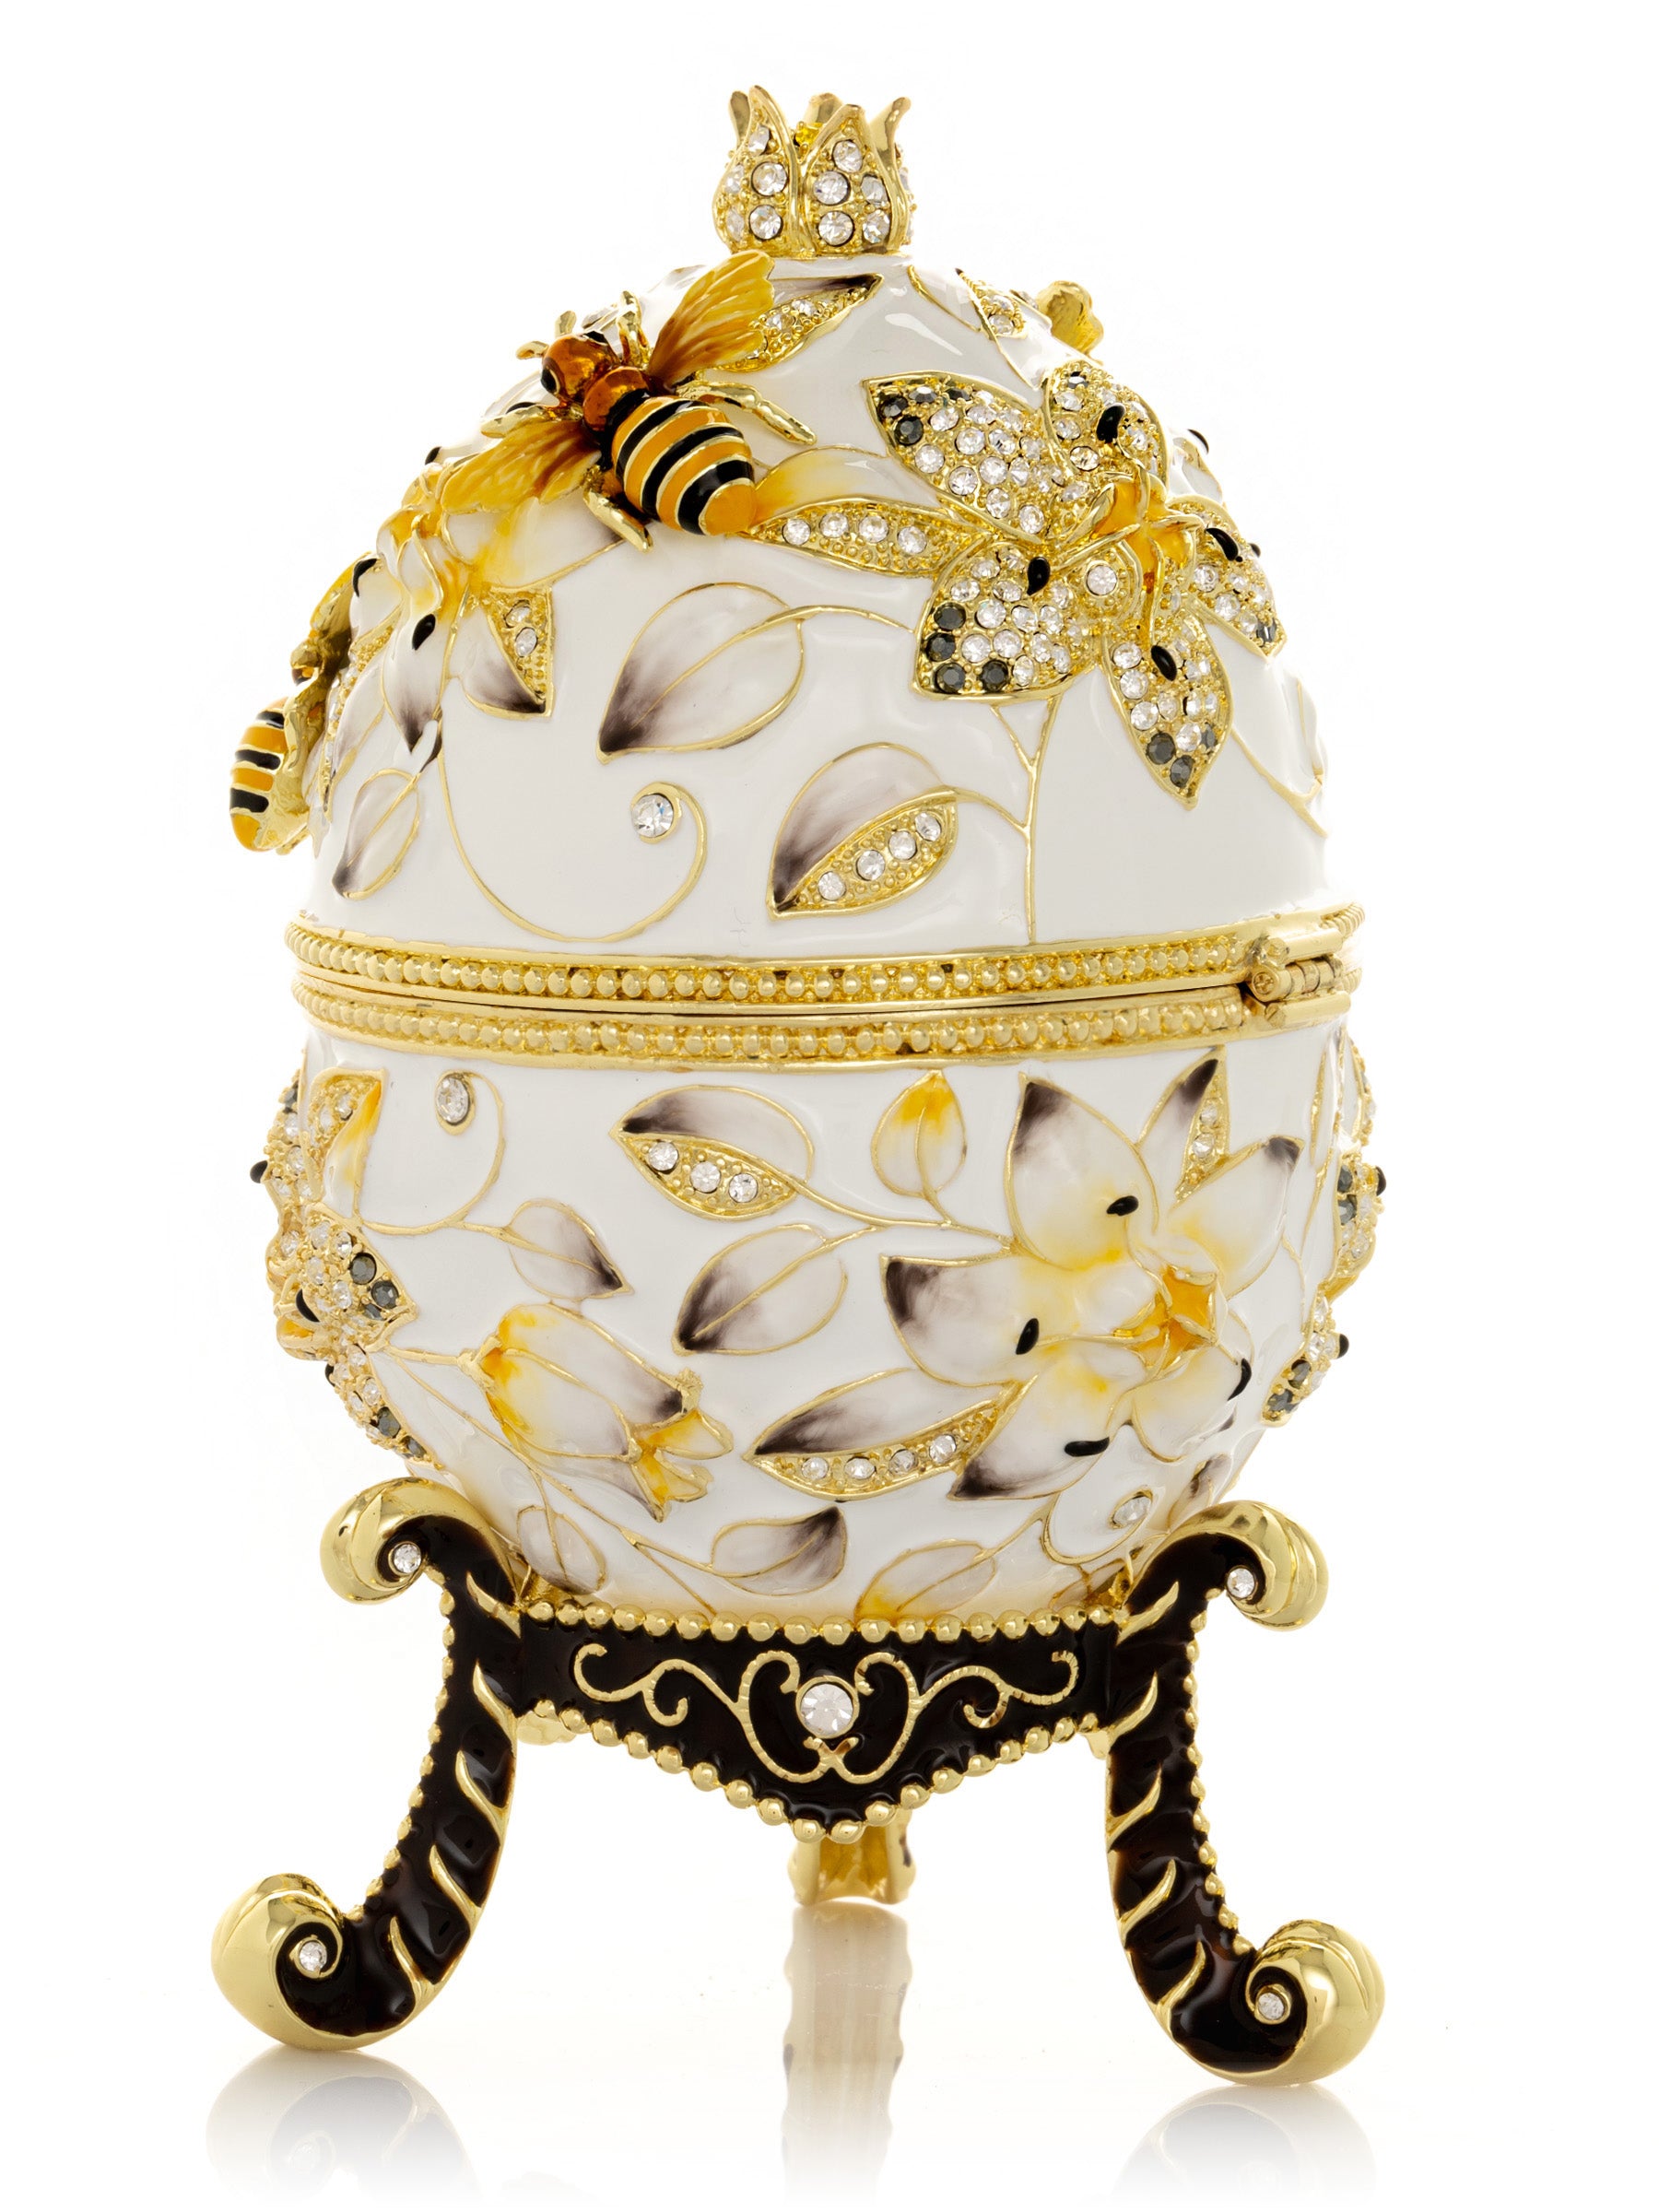 Oeuf de Fabergé blanc avec abeilles et fleurs